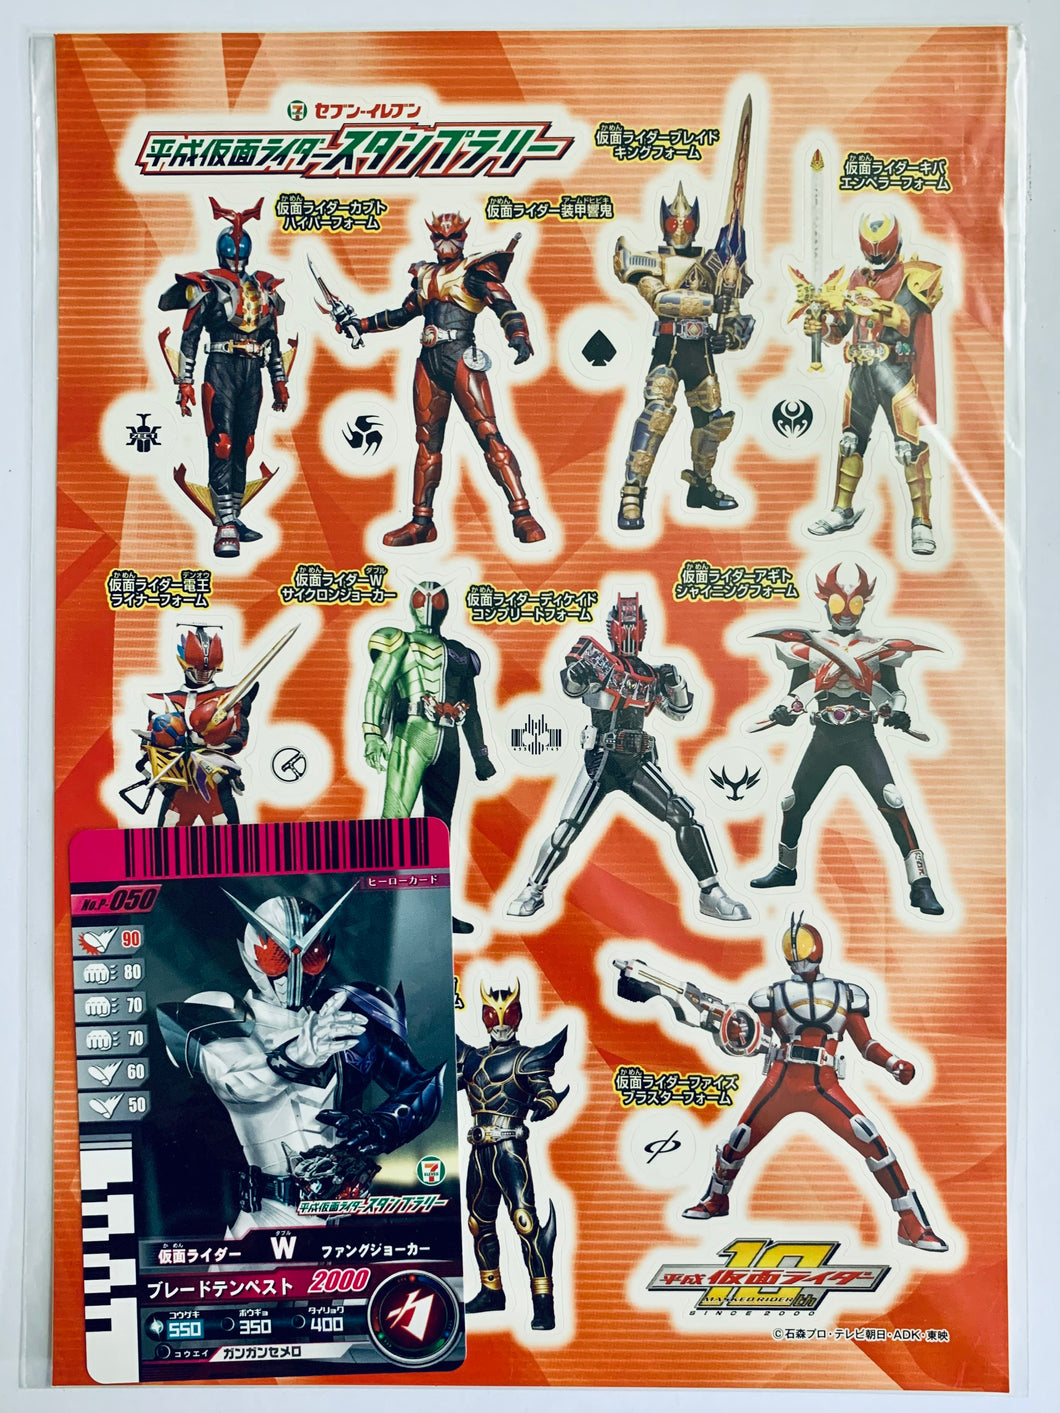 7-Eleven Kamen Rider Stamp Rally Sticker Set & Card